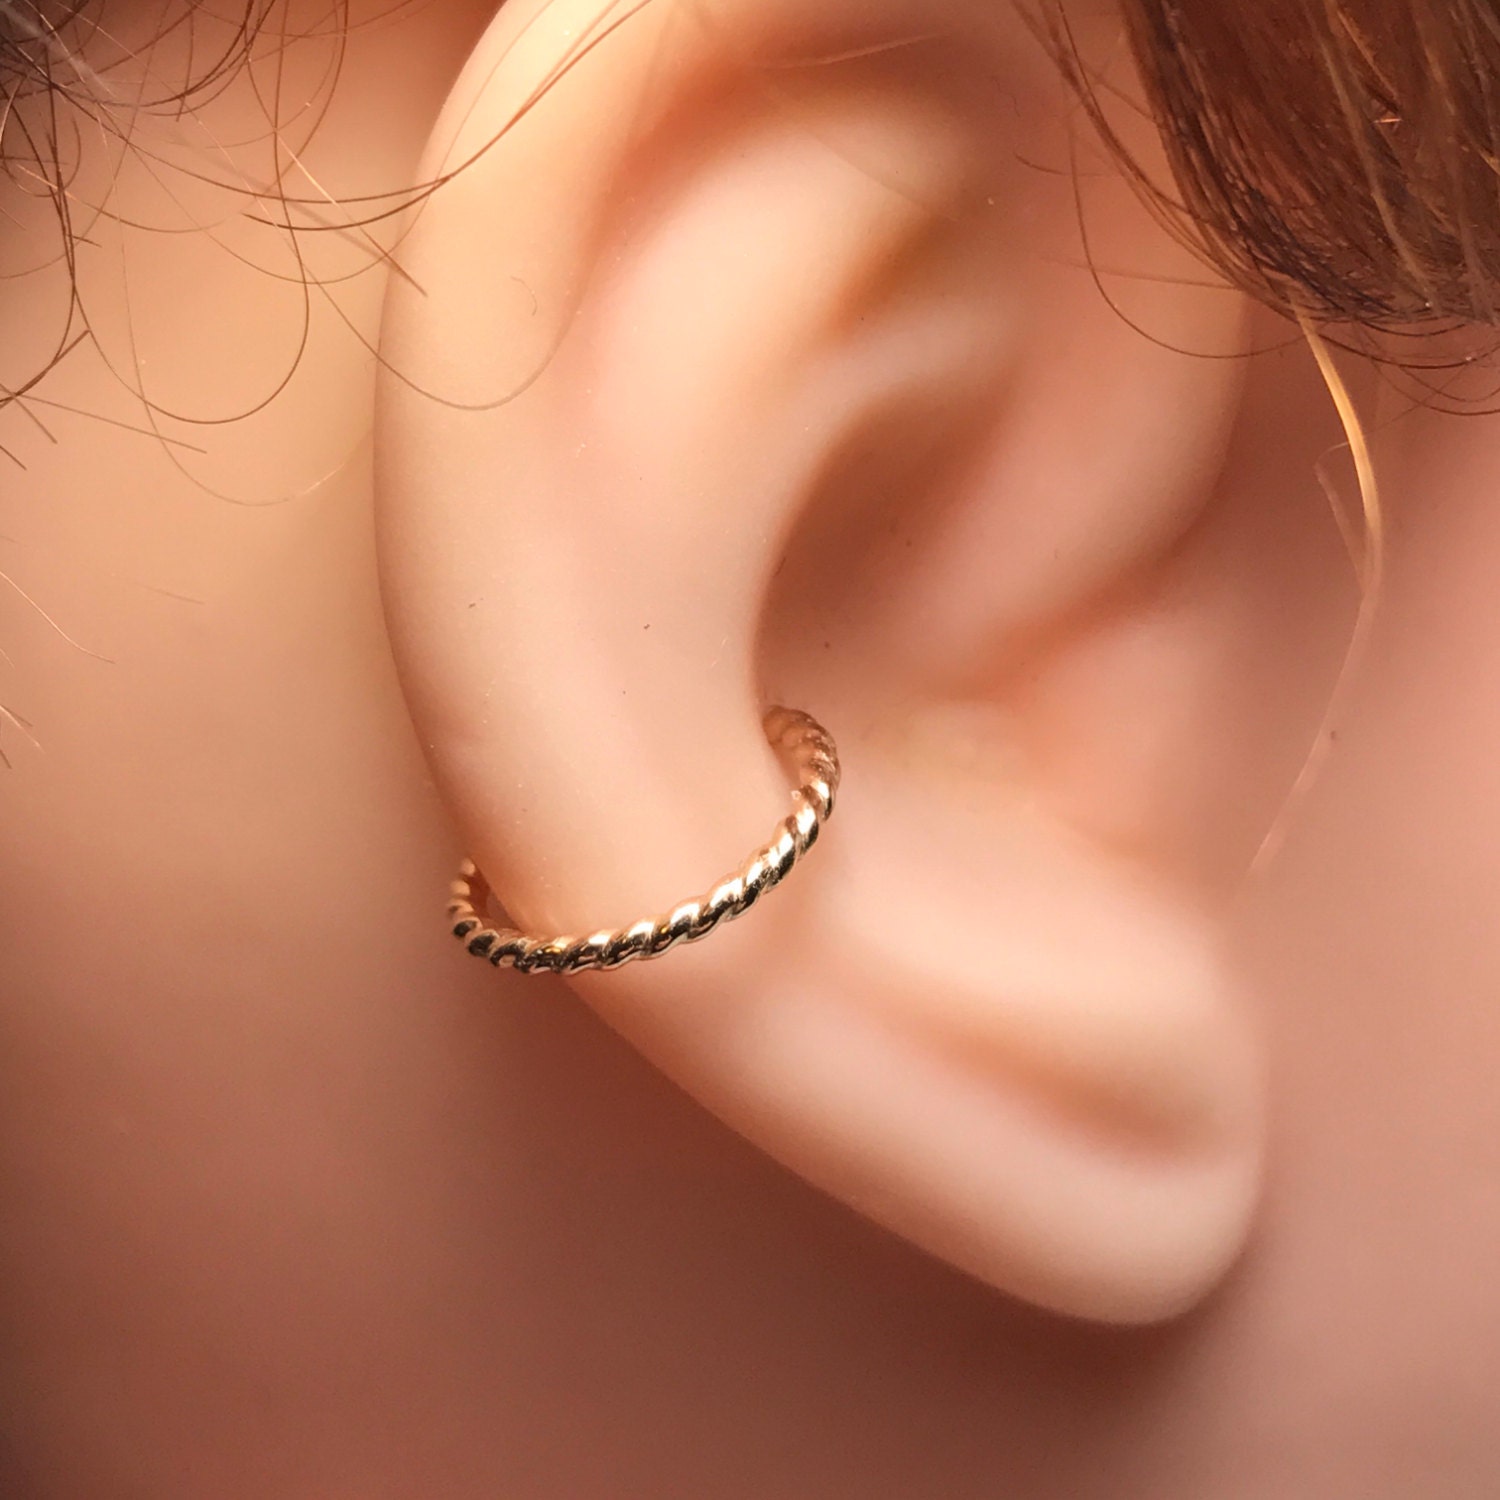 14k gf gold Conch Earring Helix Hoop Earring Rook Earring Septum